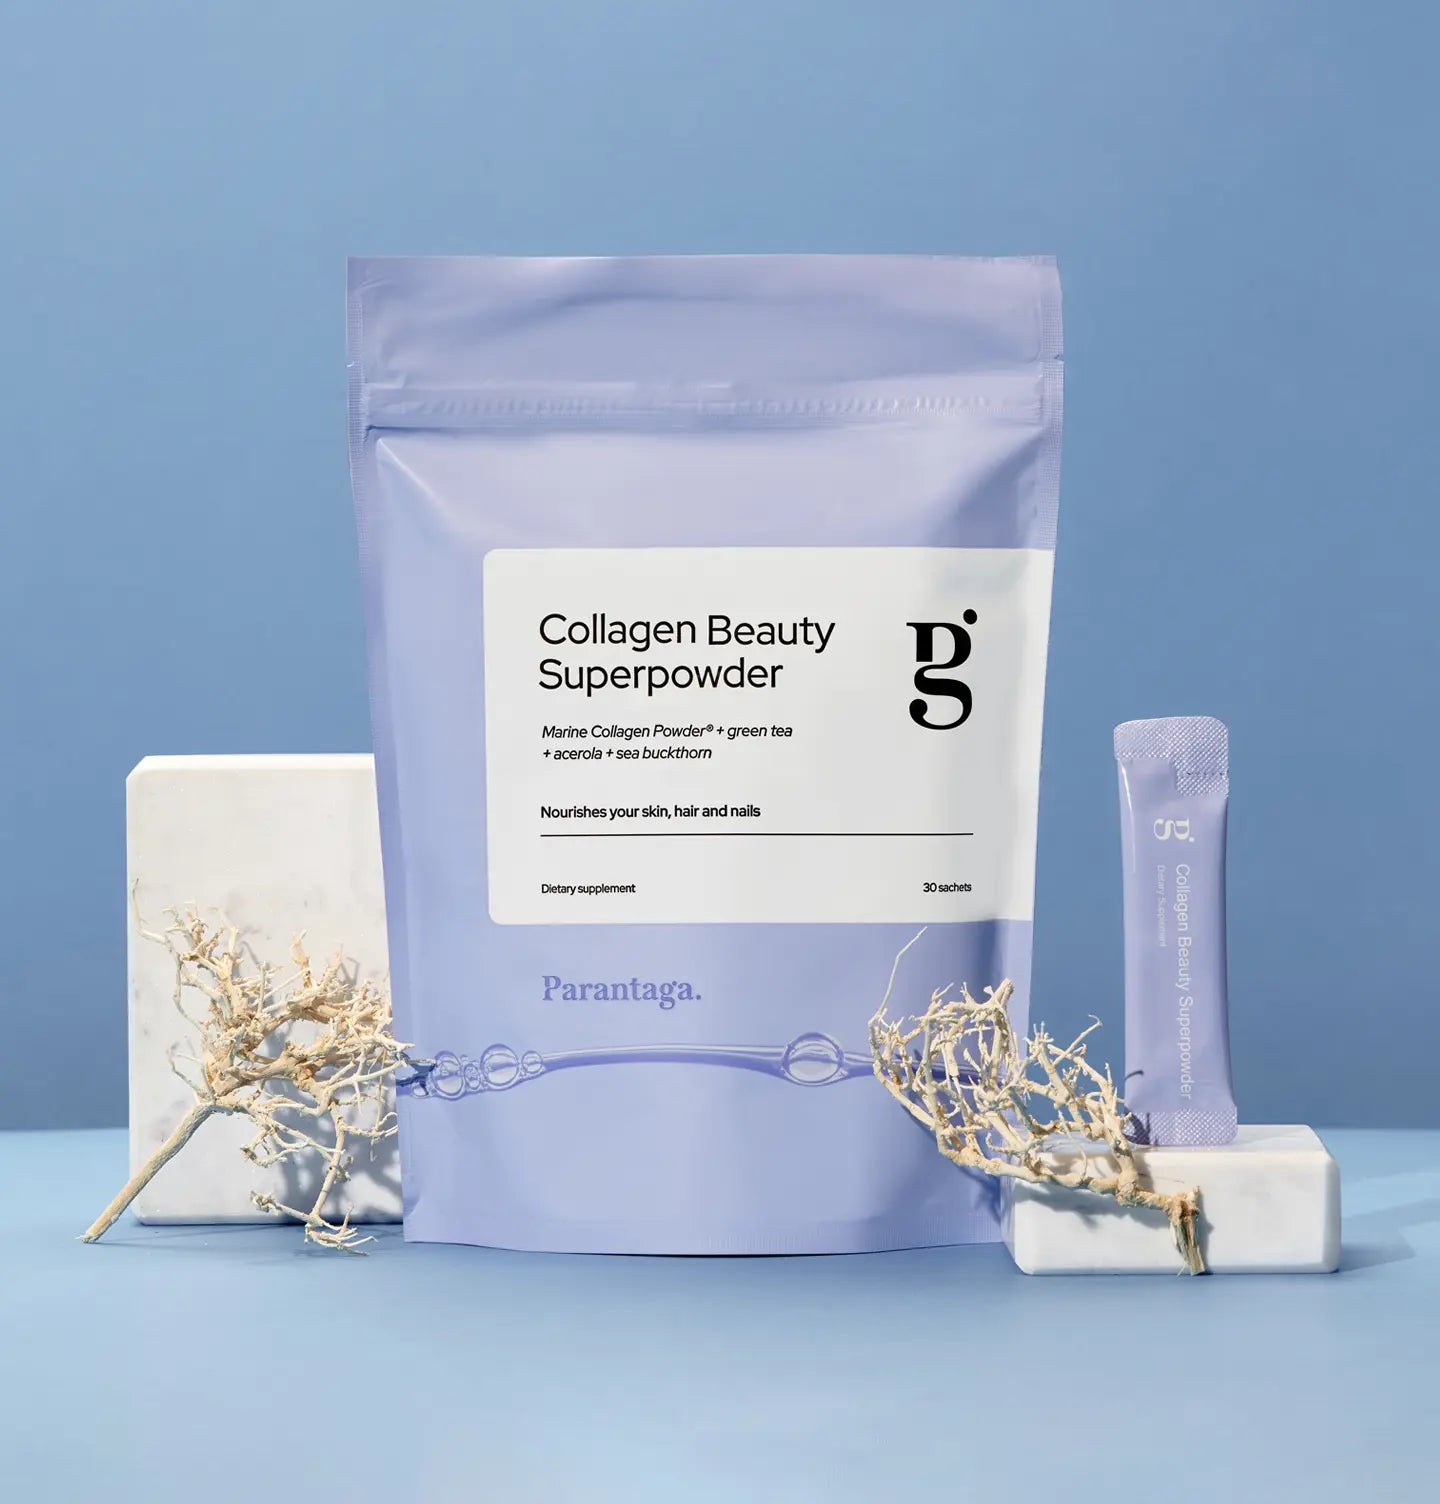 Collagen Beauty Superpowder